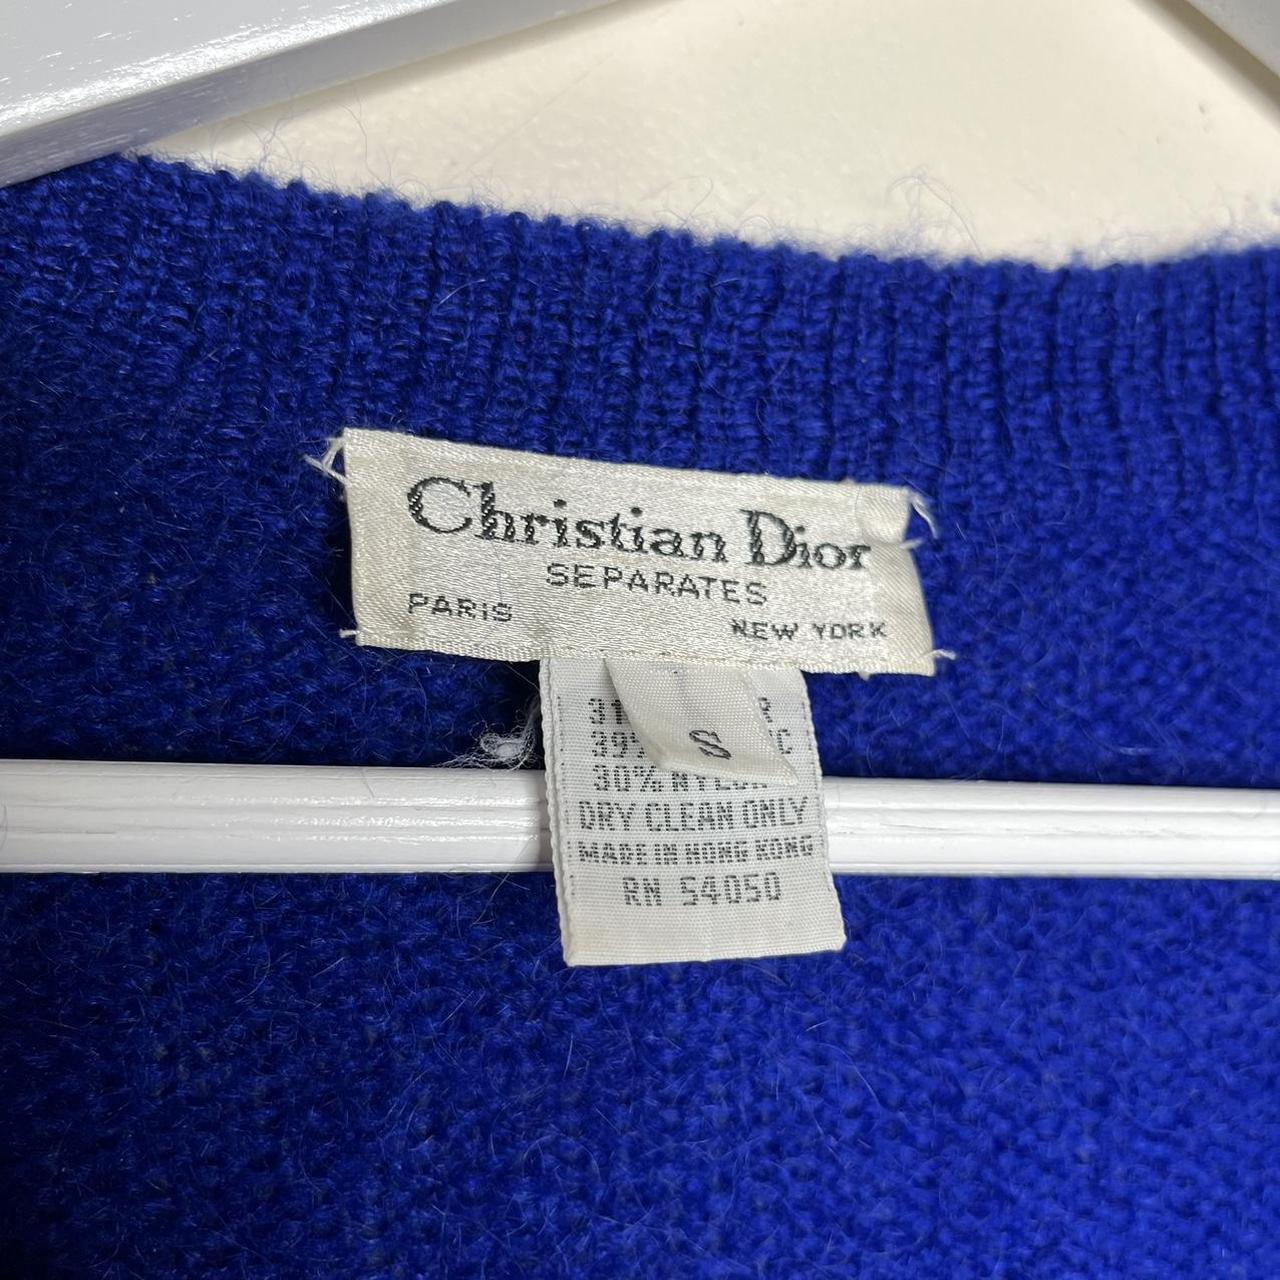 Vintage Christian Dior separates mohair blend... - Depop